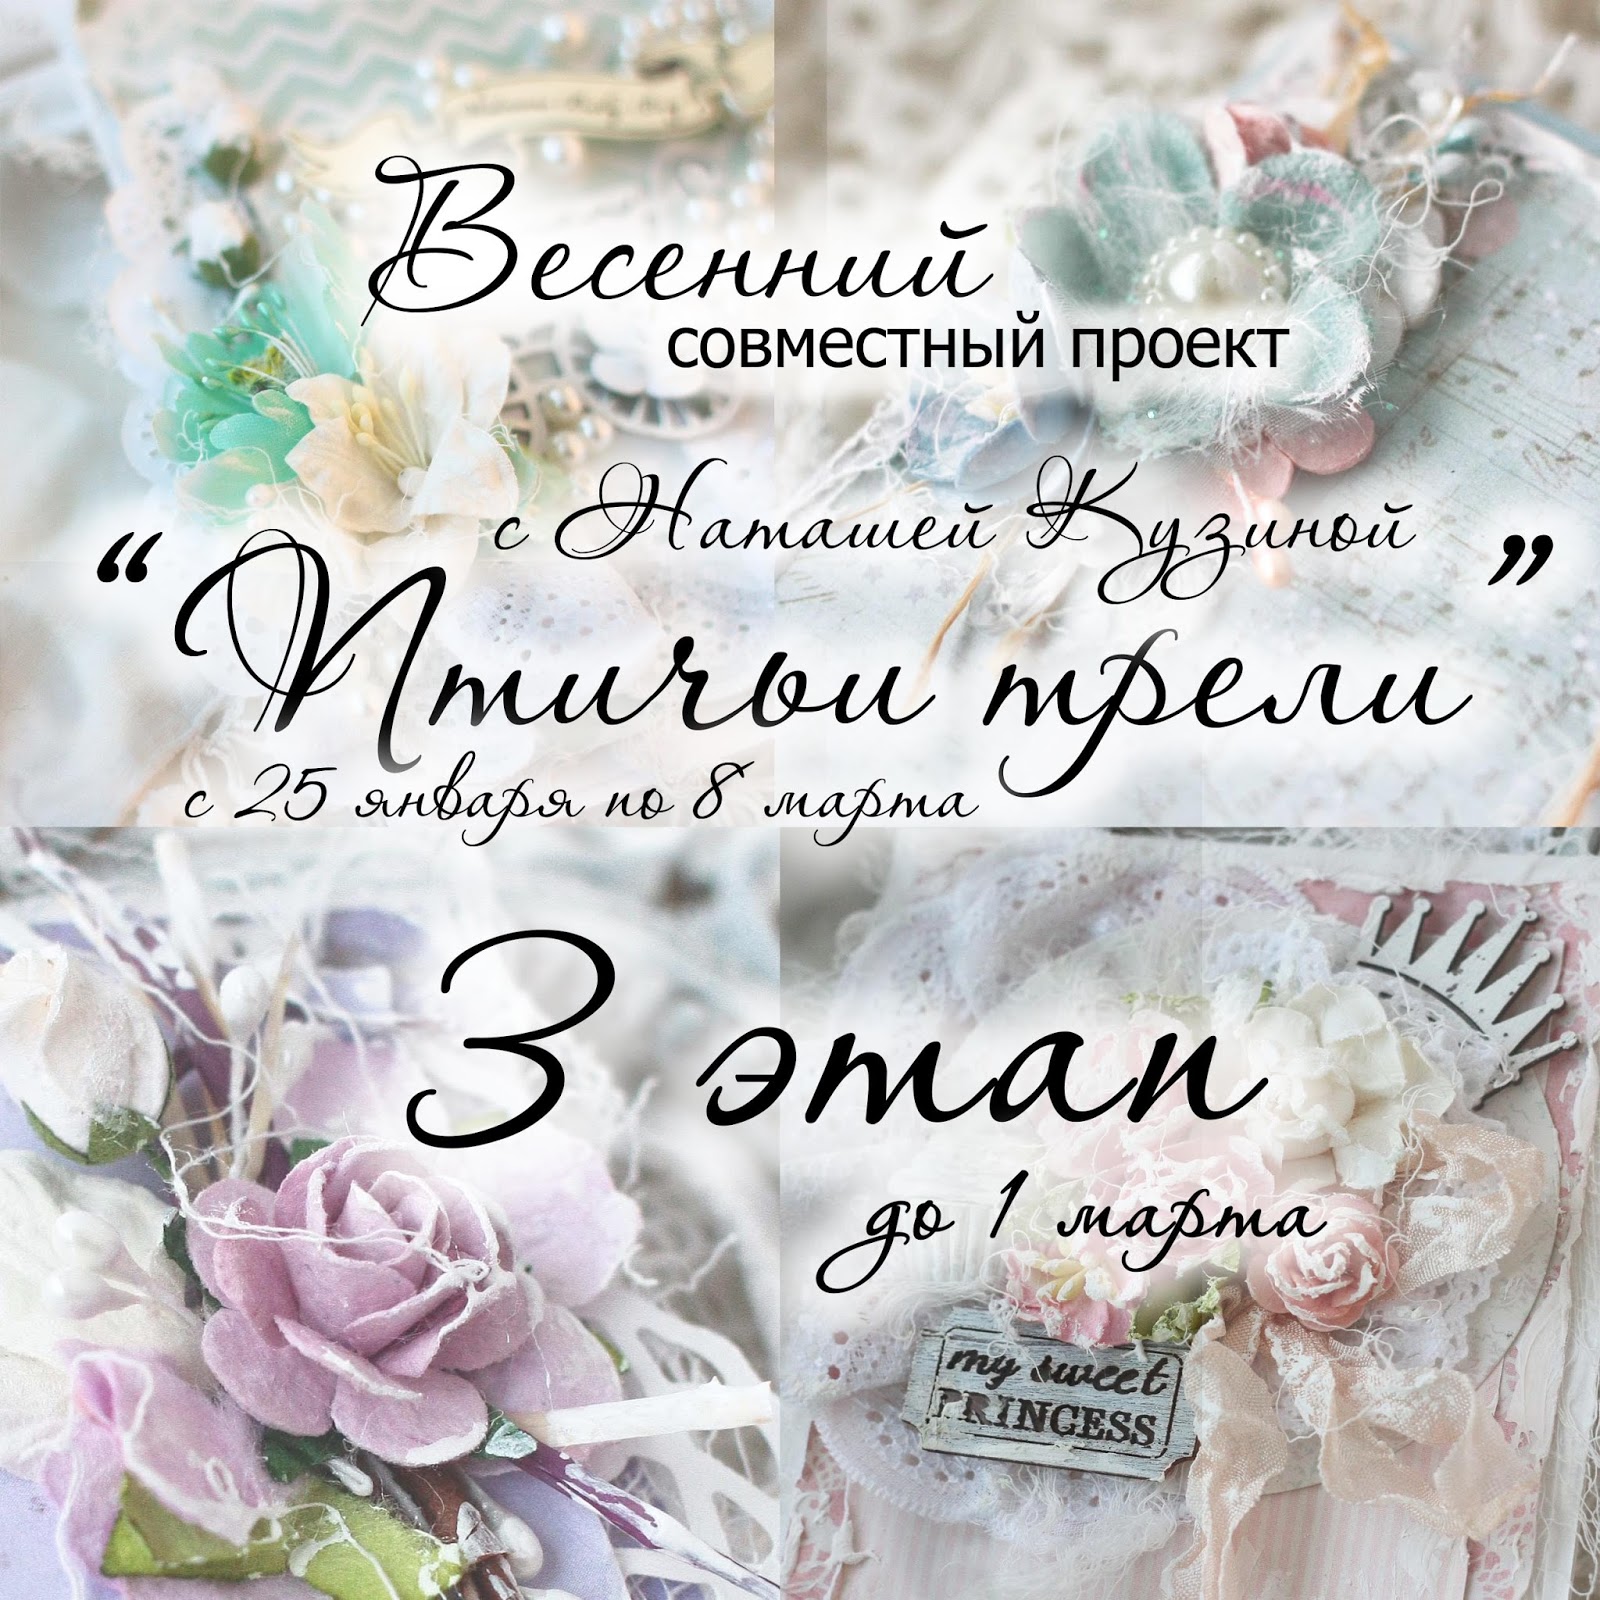 http://ruchnye-podarki.blogspot.ru/2015/02/3.html